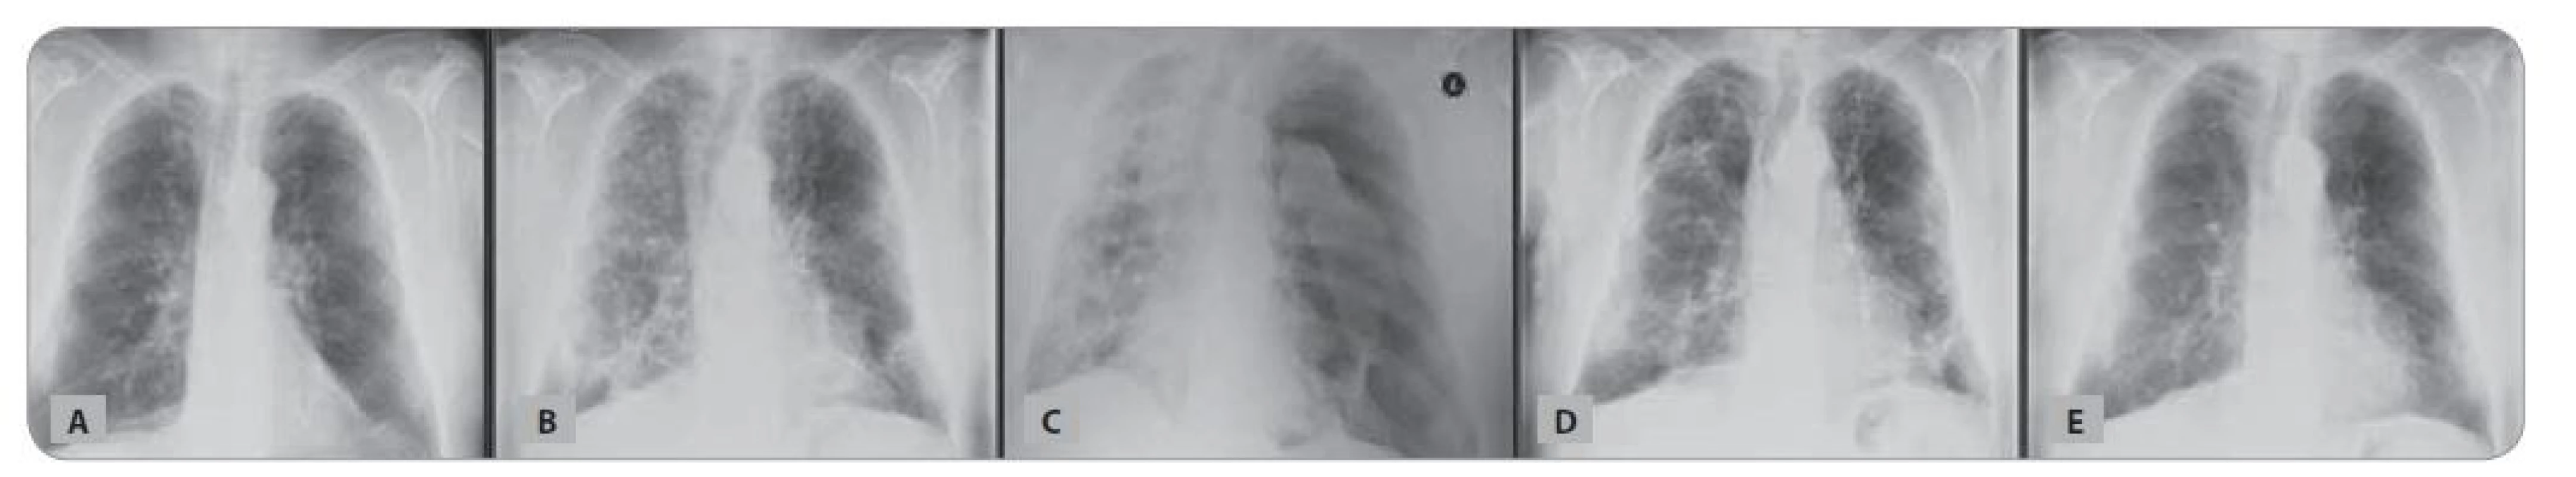 Skiagram hrudníku nemocného z Kazuistiky 3: A) před koronavirovou infekcí; B) bilaterální pneumonie COVID-19; C) subtotální
pneumotorax vlevo; D) plášťový pneumotorax vpravo; E) s odstupem 4 měsíců.